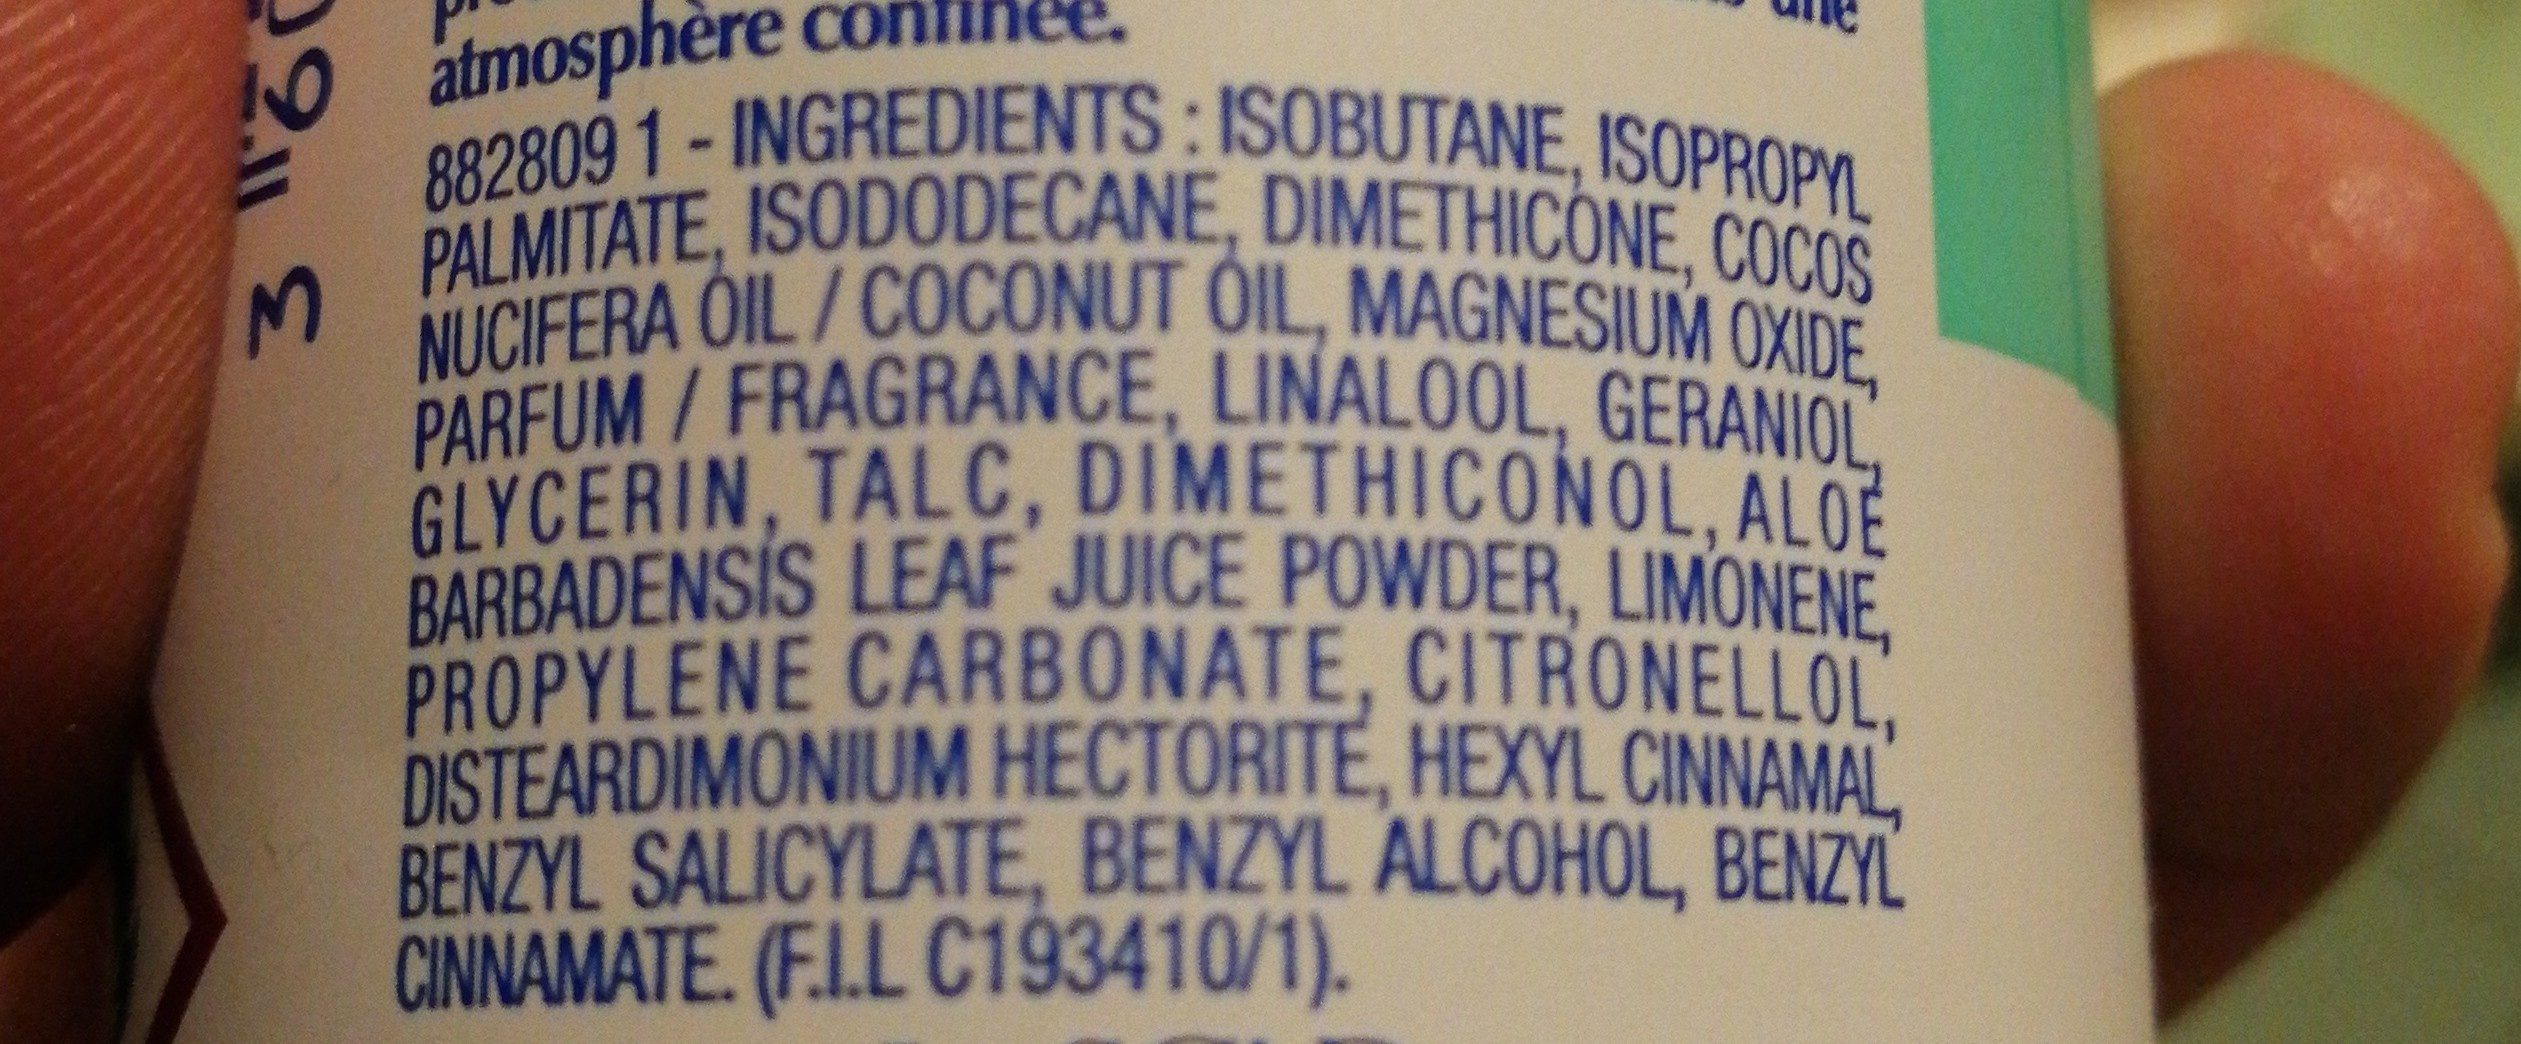 Déodorant 24 h micro talc lait d'aloé - Ингредиенты - fr